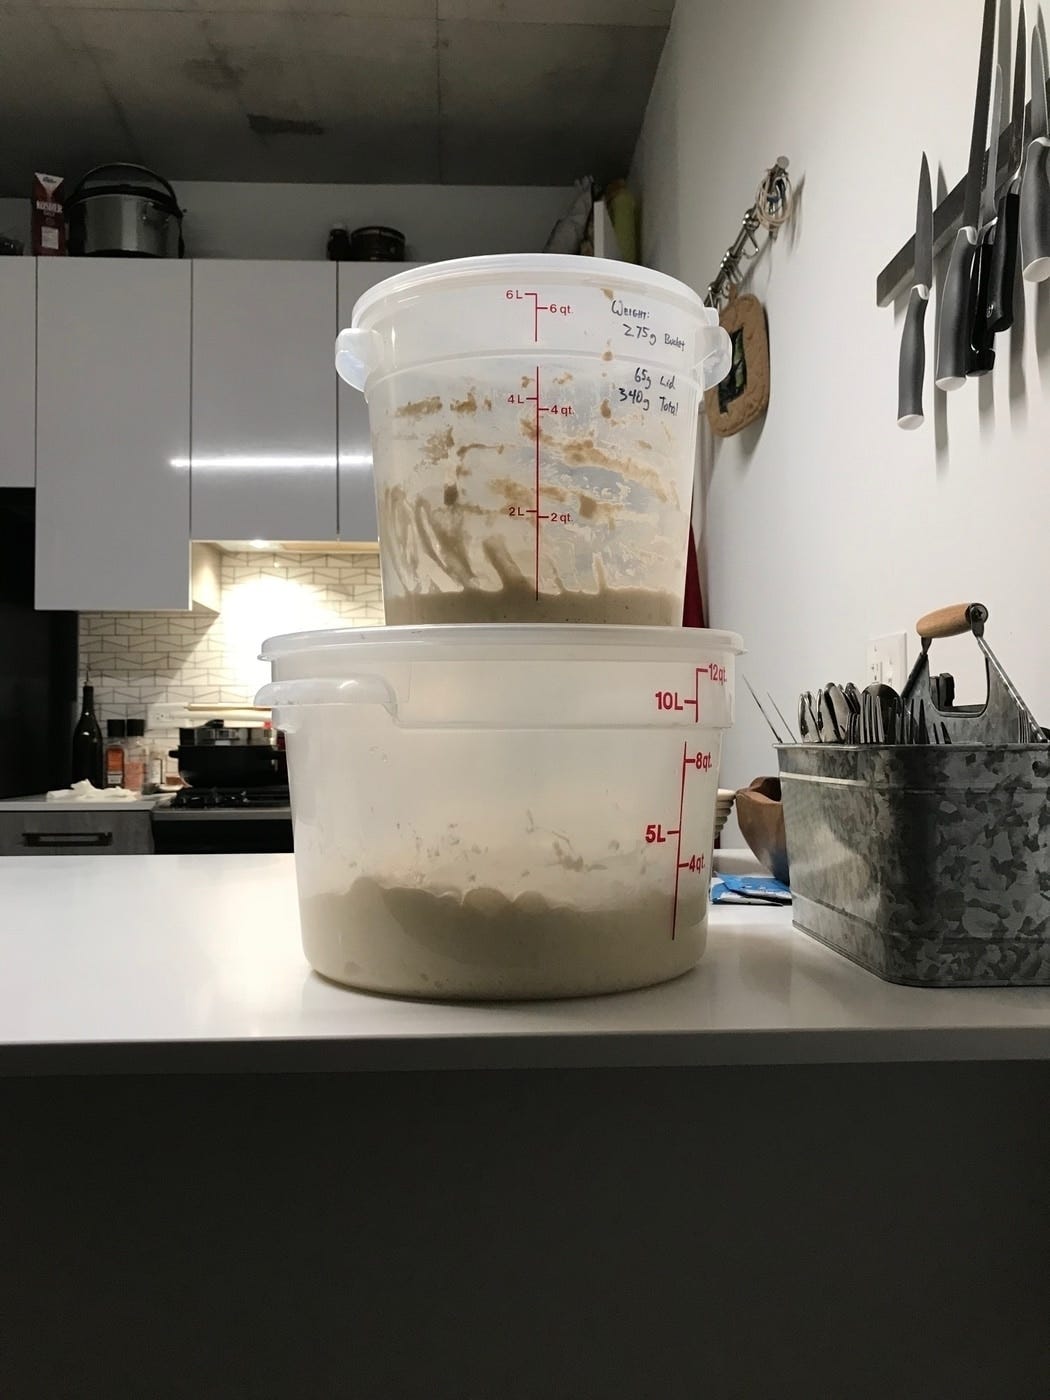 The starter fermenting